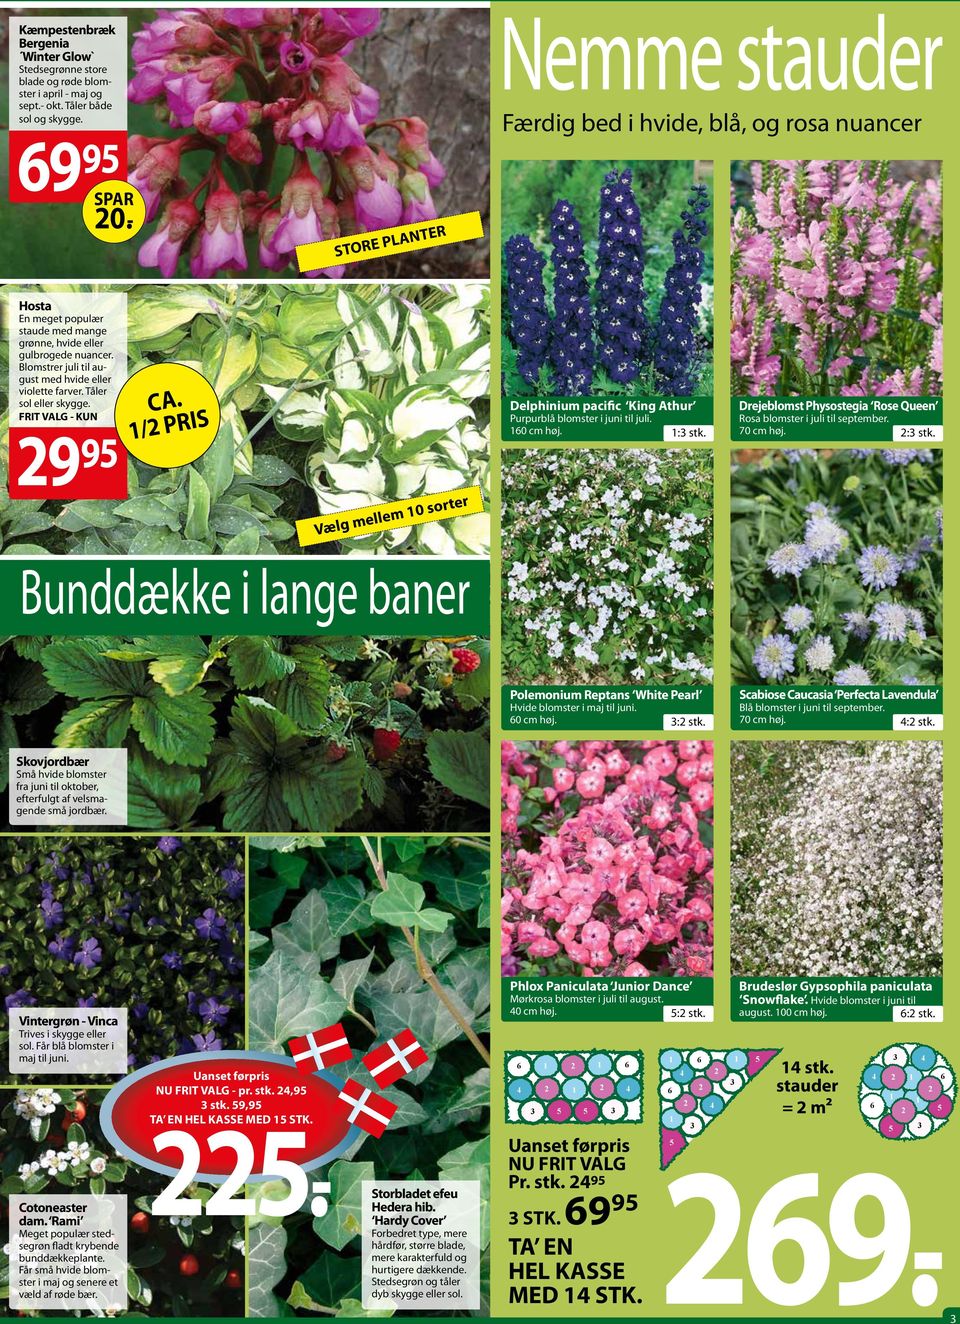 Blomstrer juli til august med hvide eller violette farver. Tåler sol eller skygge. - 29 95 CA. /2 pris Vælg mellem 0 sorter Delphinium pacific King Athur Purpurblå blomster i juni til juli. 60 cm høj.